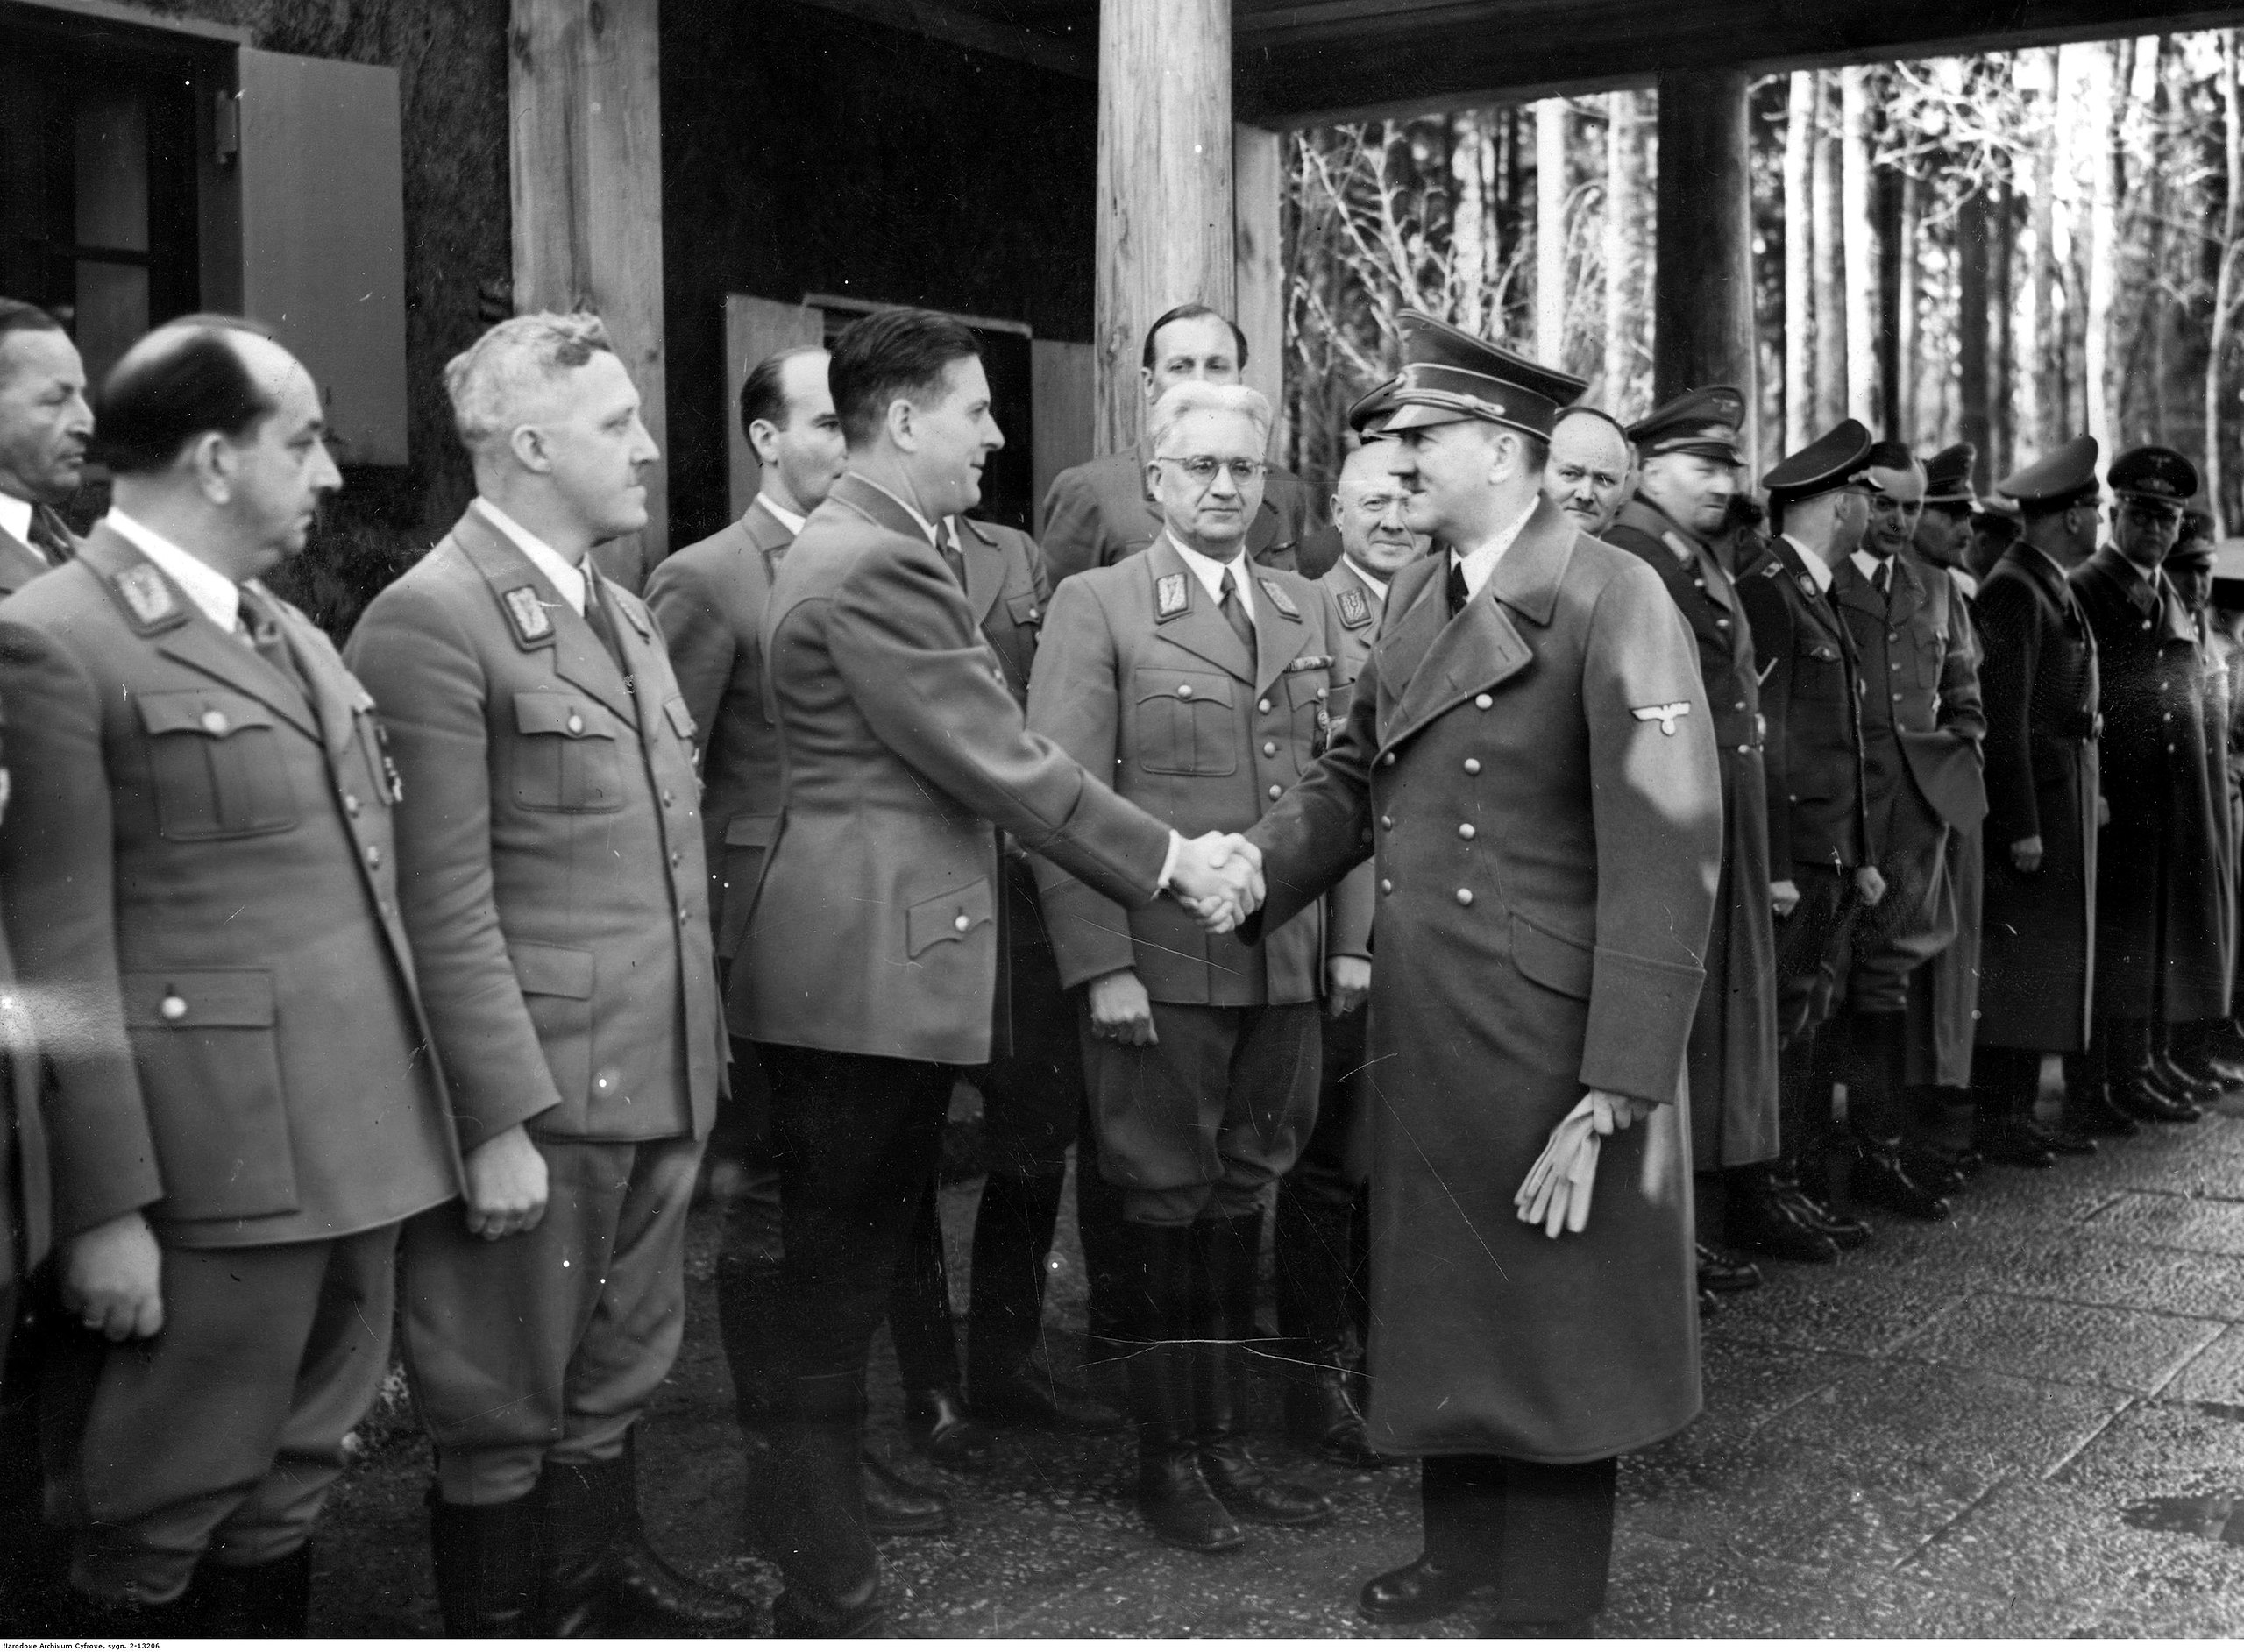 Hitler saludando a un grupo de Gauleiters, los jefes de zona del partido nazi en el territorio alemán y las zonas ocupadas por su ejército. (wikicommons)